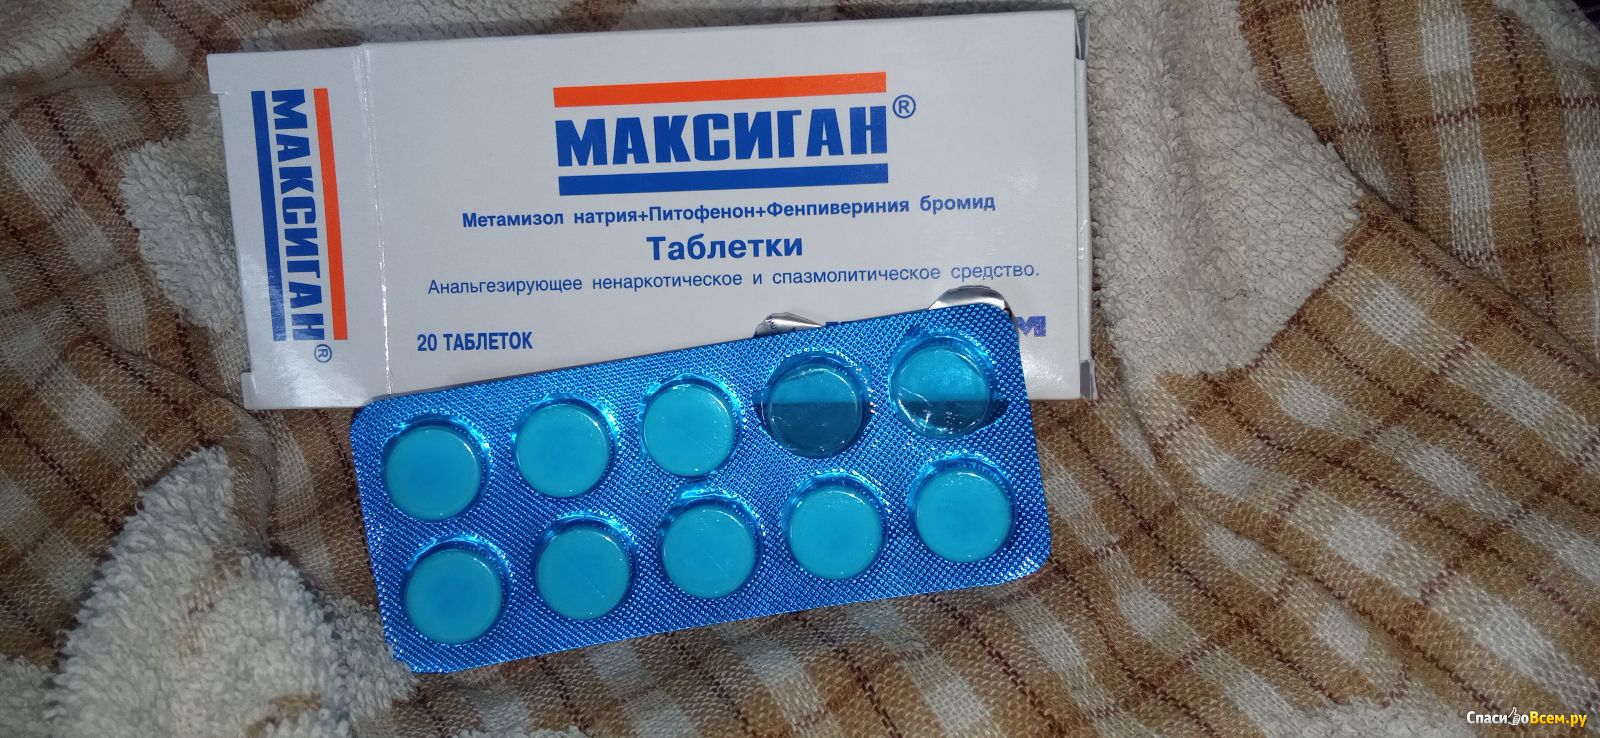 Сильные обезболивающие таблетки после операции. Обезболивающие таблетки. Максиган таблетки. Обезболивающие таблетки в синей упаковке. Недорогое обезболивающее в таблетках.